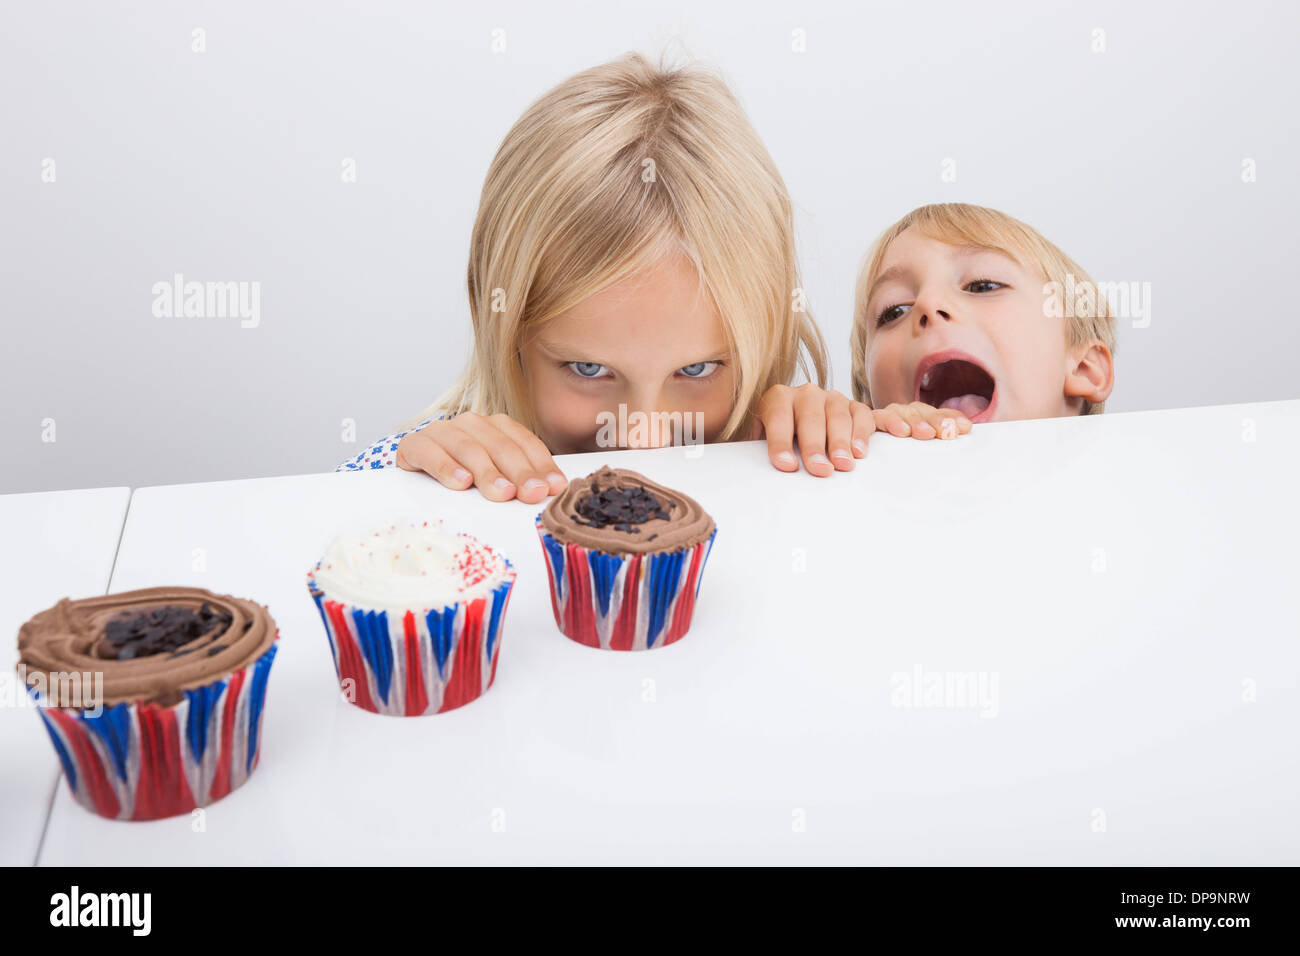 Versucht Kinder betrachten Cupcakes auf Tisch Stockfoto